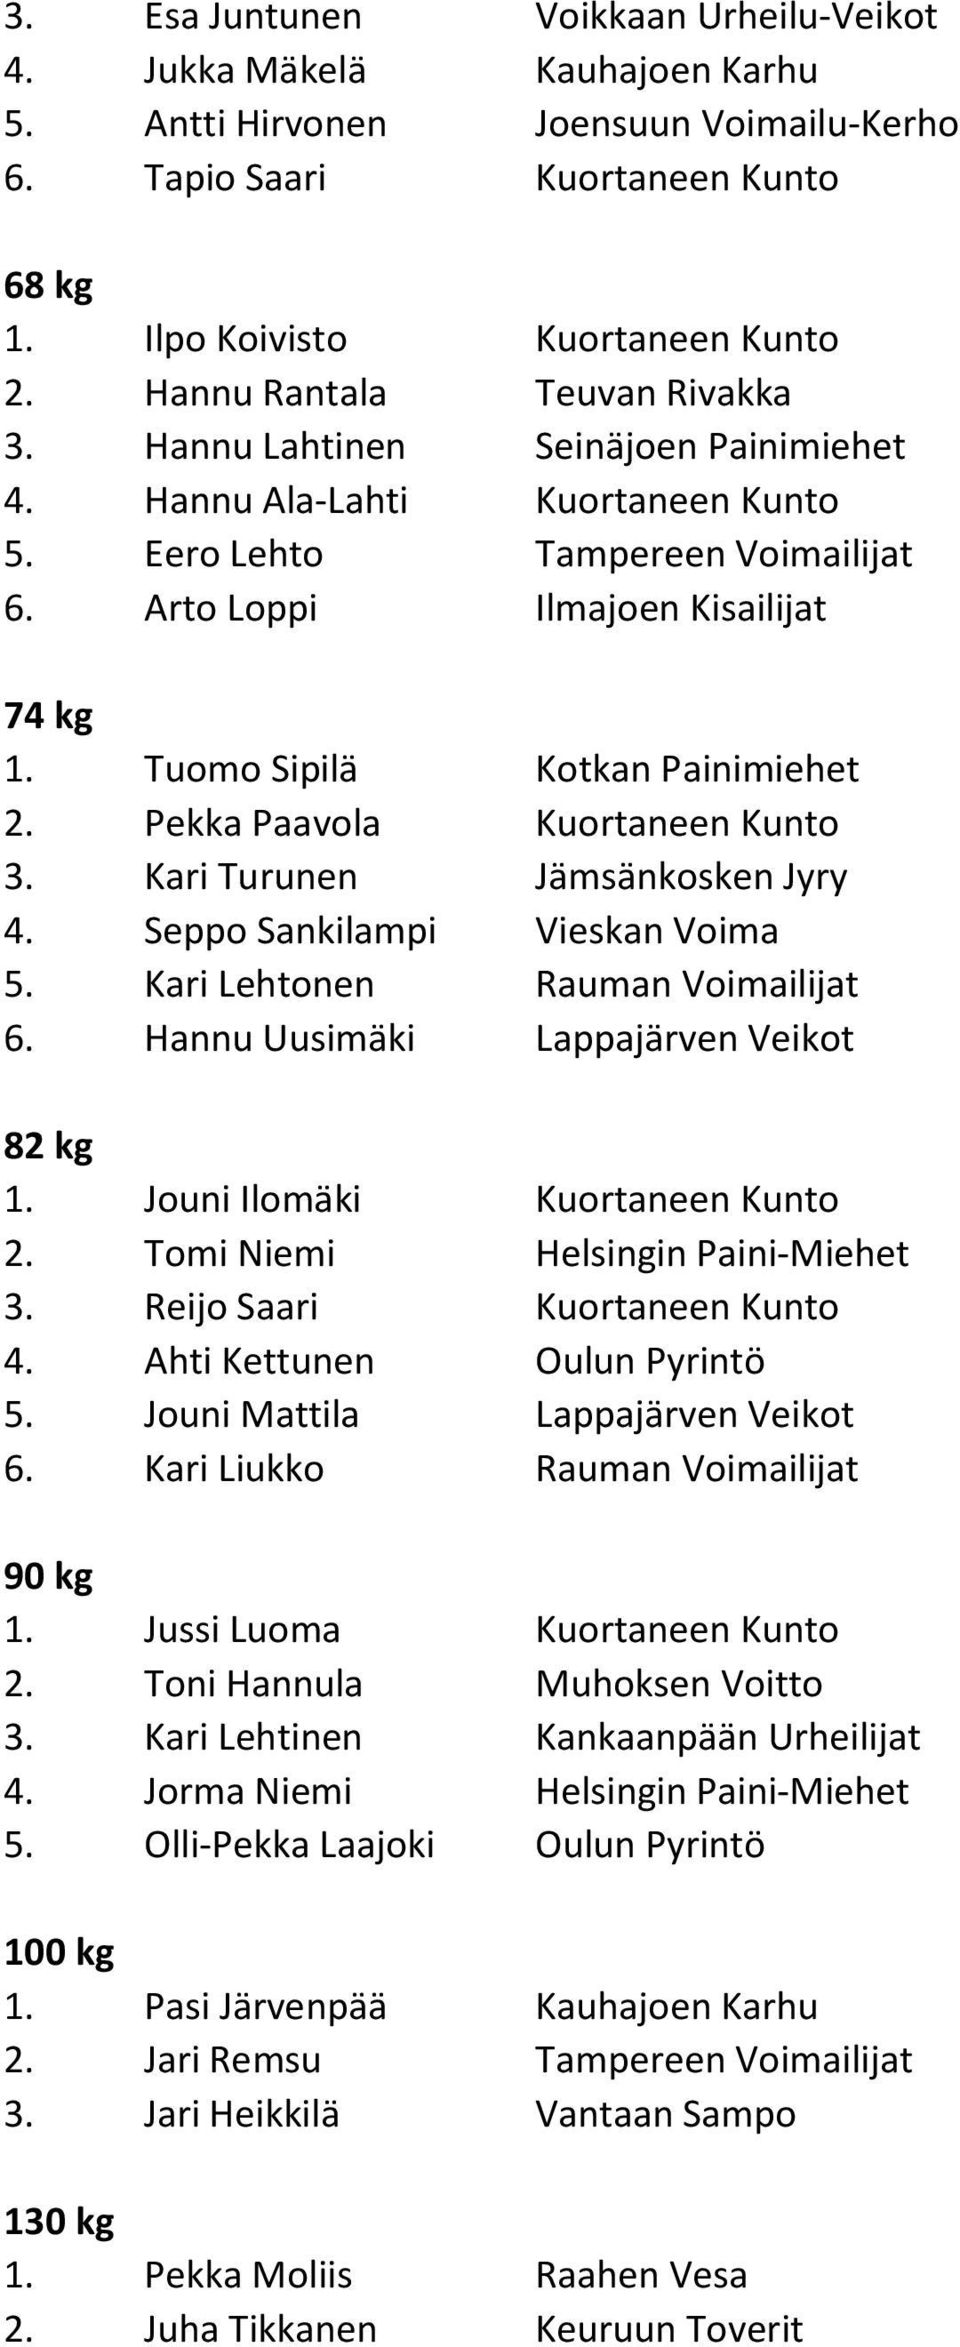 Tuomo Sipilä Kotkan Painimiehet 2. Pekka Paavola Kuortaneen Kunto 3. Kari Turunen Jämsänkosken Jyry 4. Seppo Sankilampi Vieskan Voima 5. Kari Lehtonen Rauman Voimailijat 6.